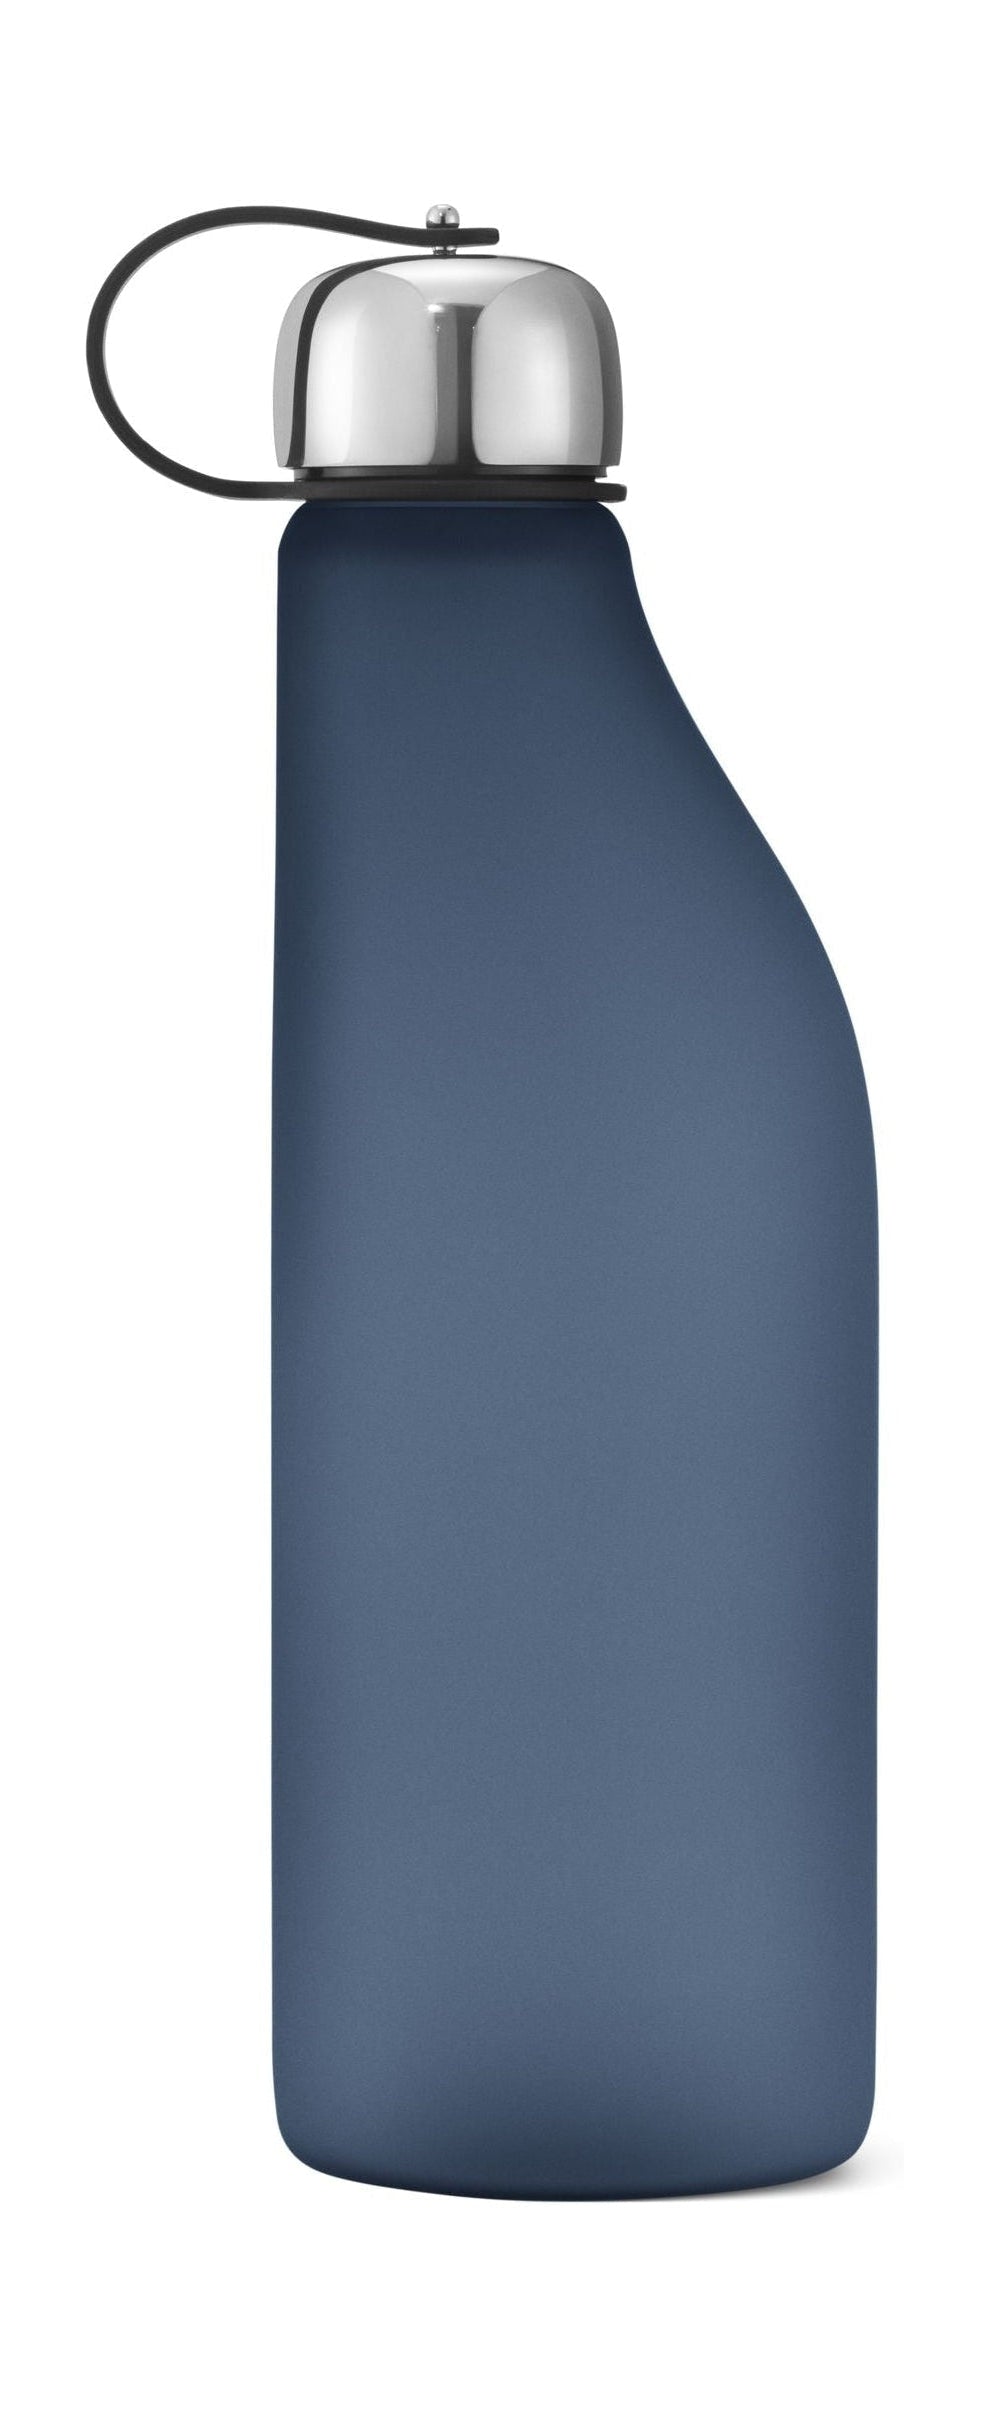 Georg Jensen Sky Drikkeflaske 500 ml, blå